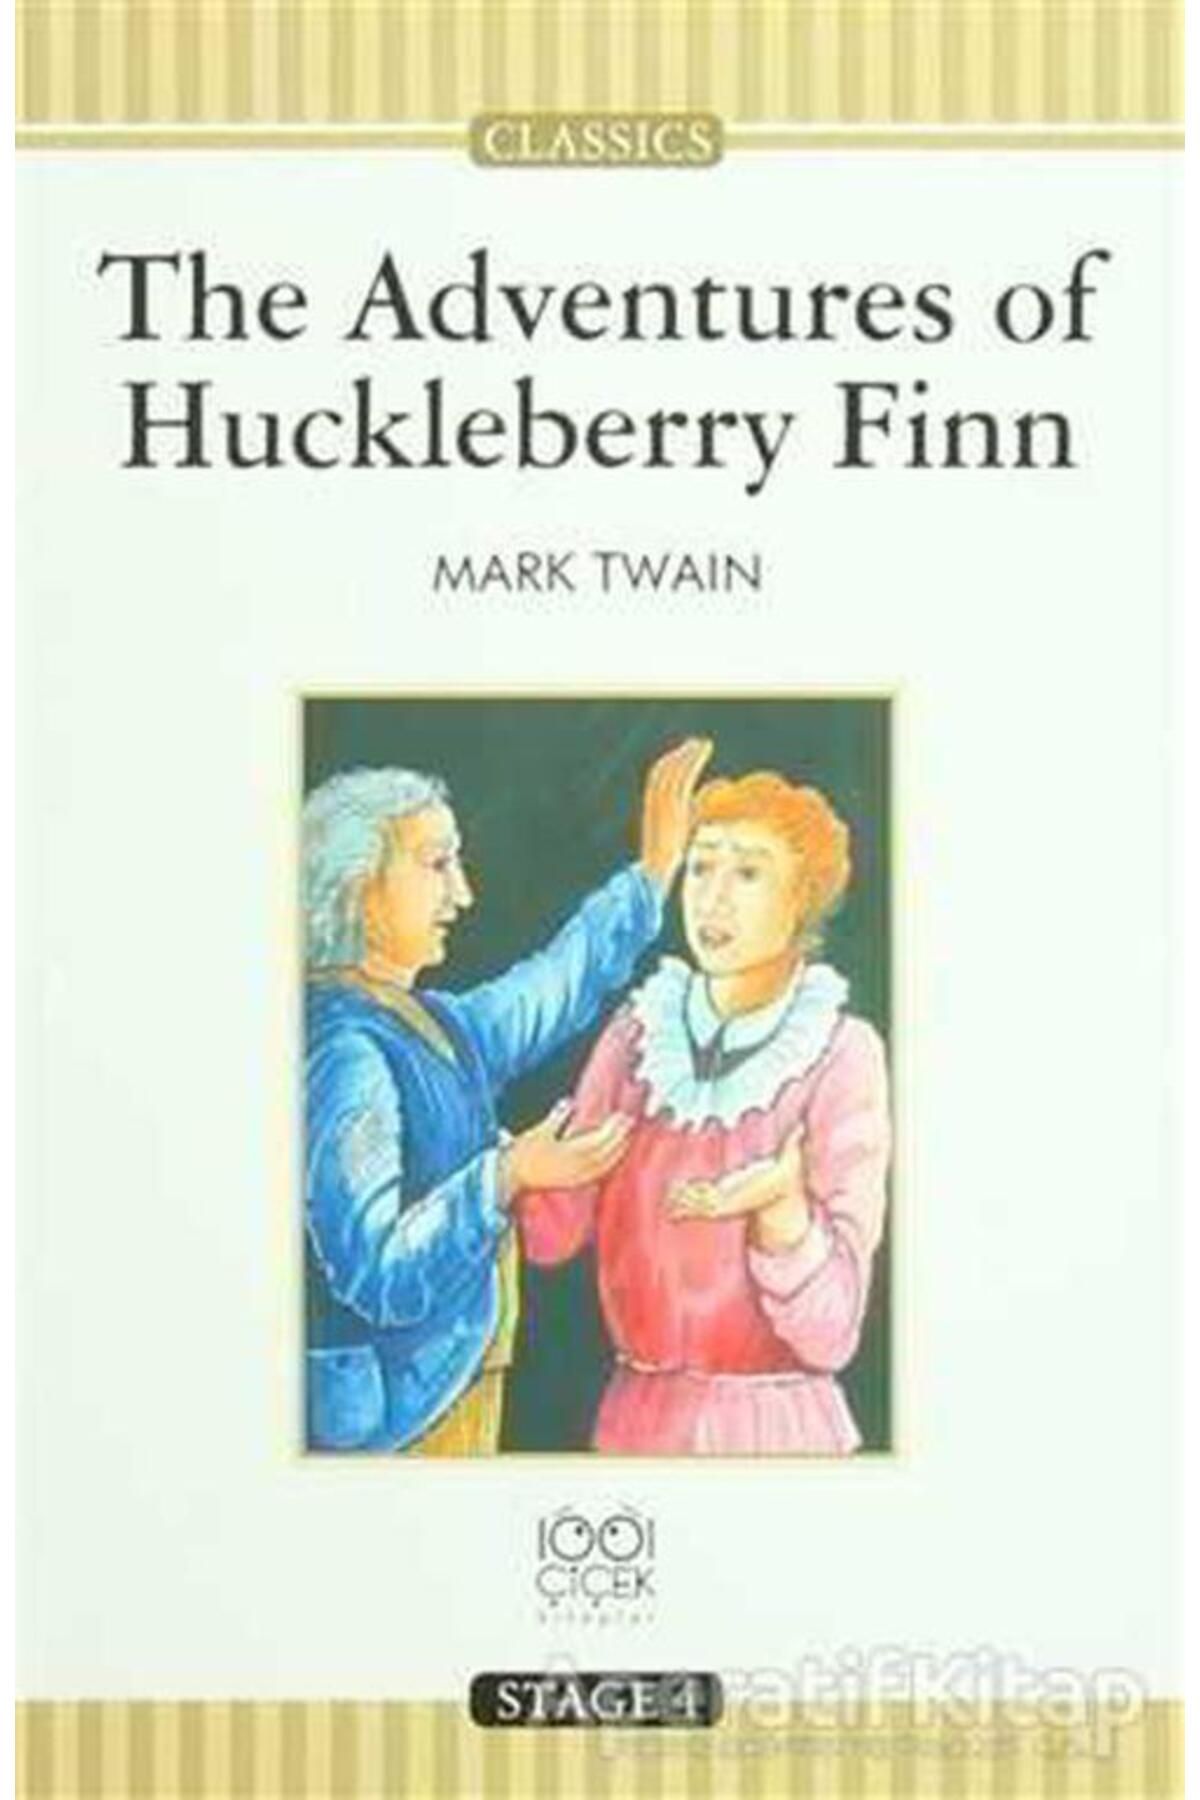 1001 Çiçek Kitaplar The Adventures of Huckleberry Finn - Mark Twain - 1001 Çiçek Kitaplar